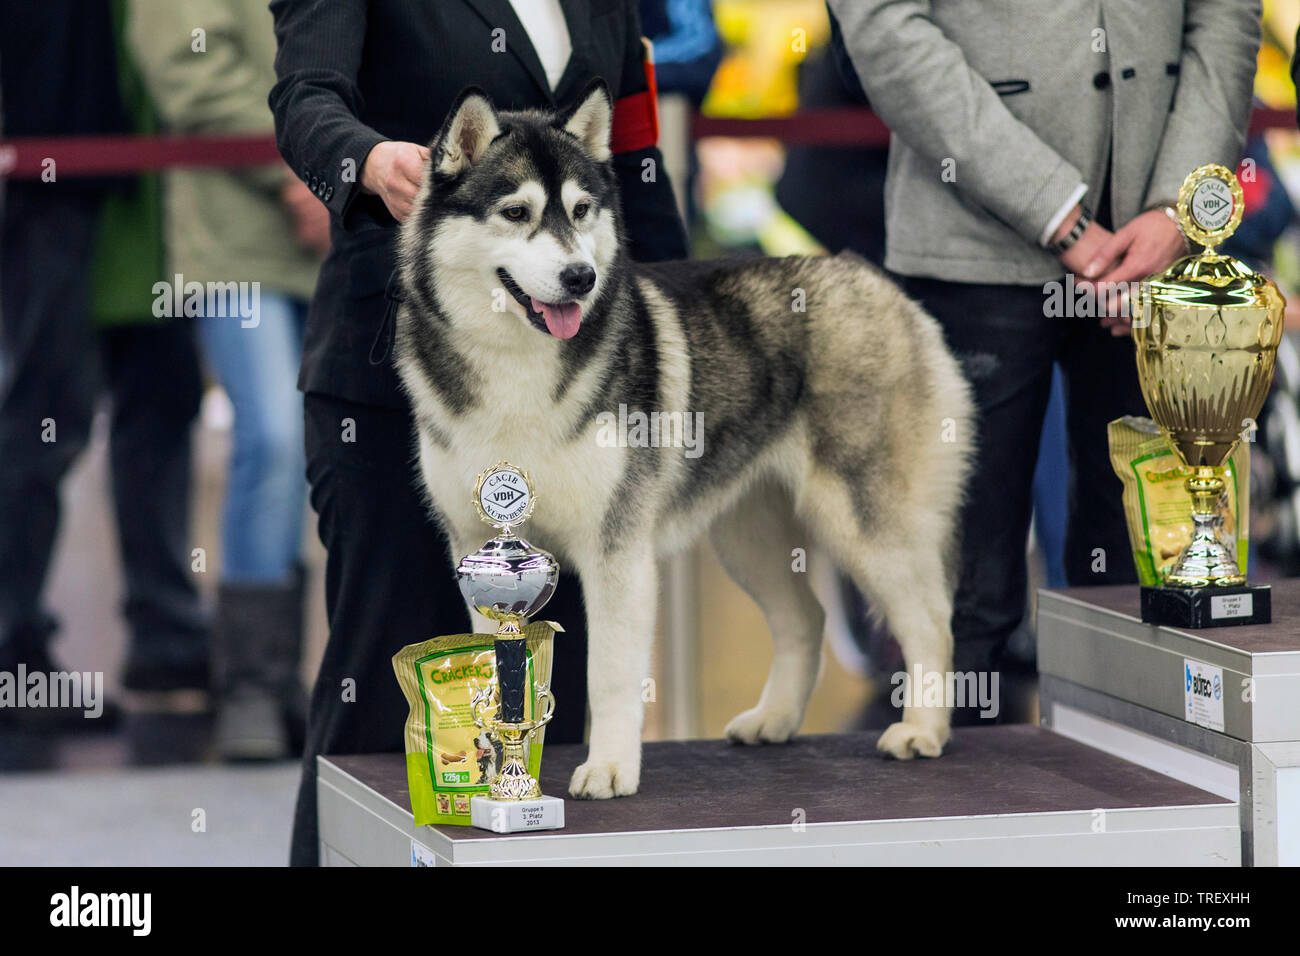 Husky de Sibérie. Chien gagnant avec des prix lors d'un élevage. Allemagne Banque D'Images